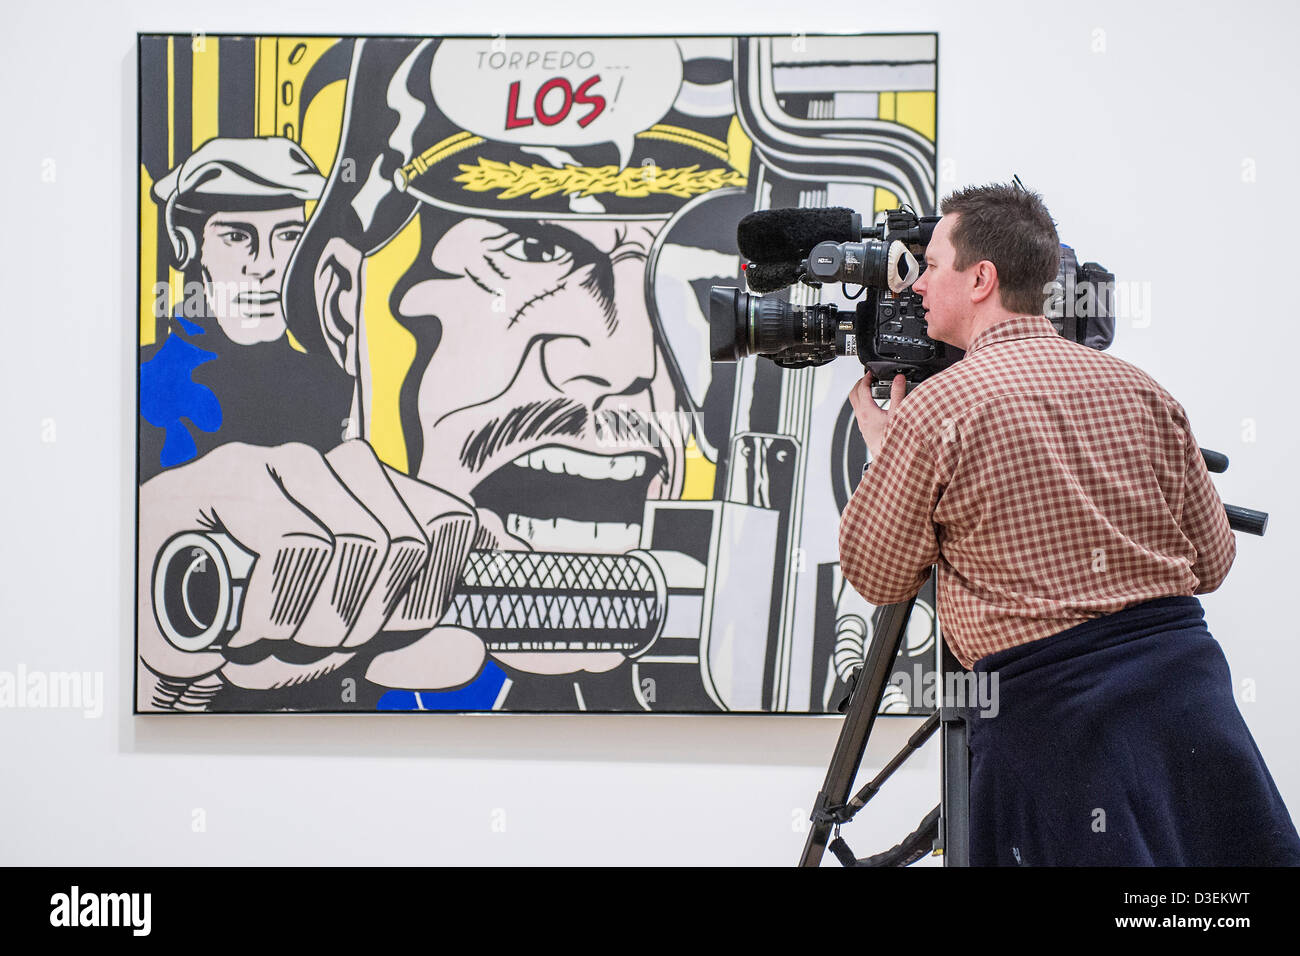 Tate Modern, Londres, Royaume-Uni. 18 février 2013. Torpedo...Los ! Roy Lichtenstein, l'un des plus célèbres figures de Pop Art, s'expose à la Tate Modern. C'est la première grande rétrospective de l'œuvre de Lichtenstein dans vingt ans et rassemble plus de 100 de l'artiste peintures les plus emblématiques. Le spectacle sera présenté du 21 février au 27 mai 2013 et est parrainé par la Bank of America, Merrill Lynch. Tate Modern. Credit : acheter Bell/Alamy Live News Banque D'Images